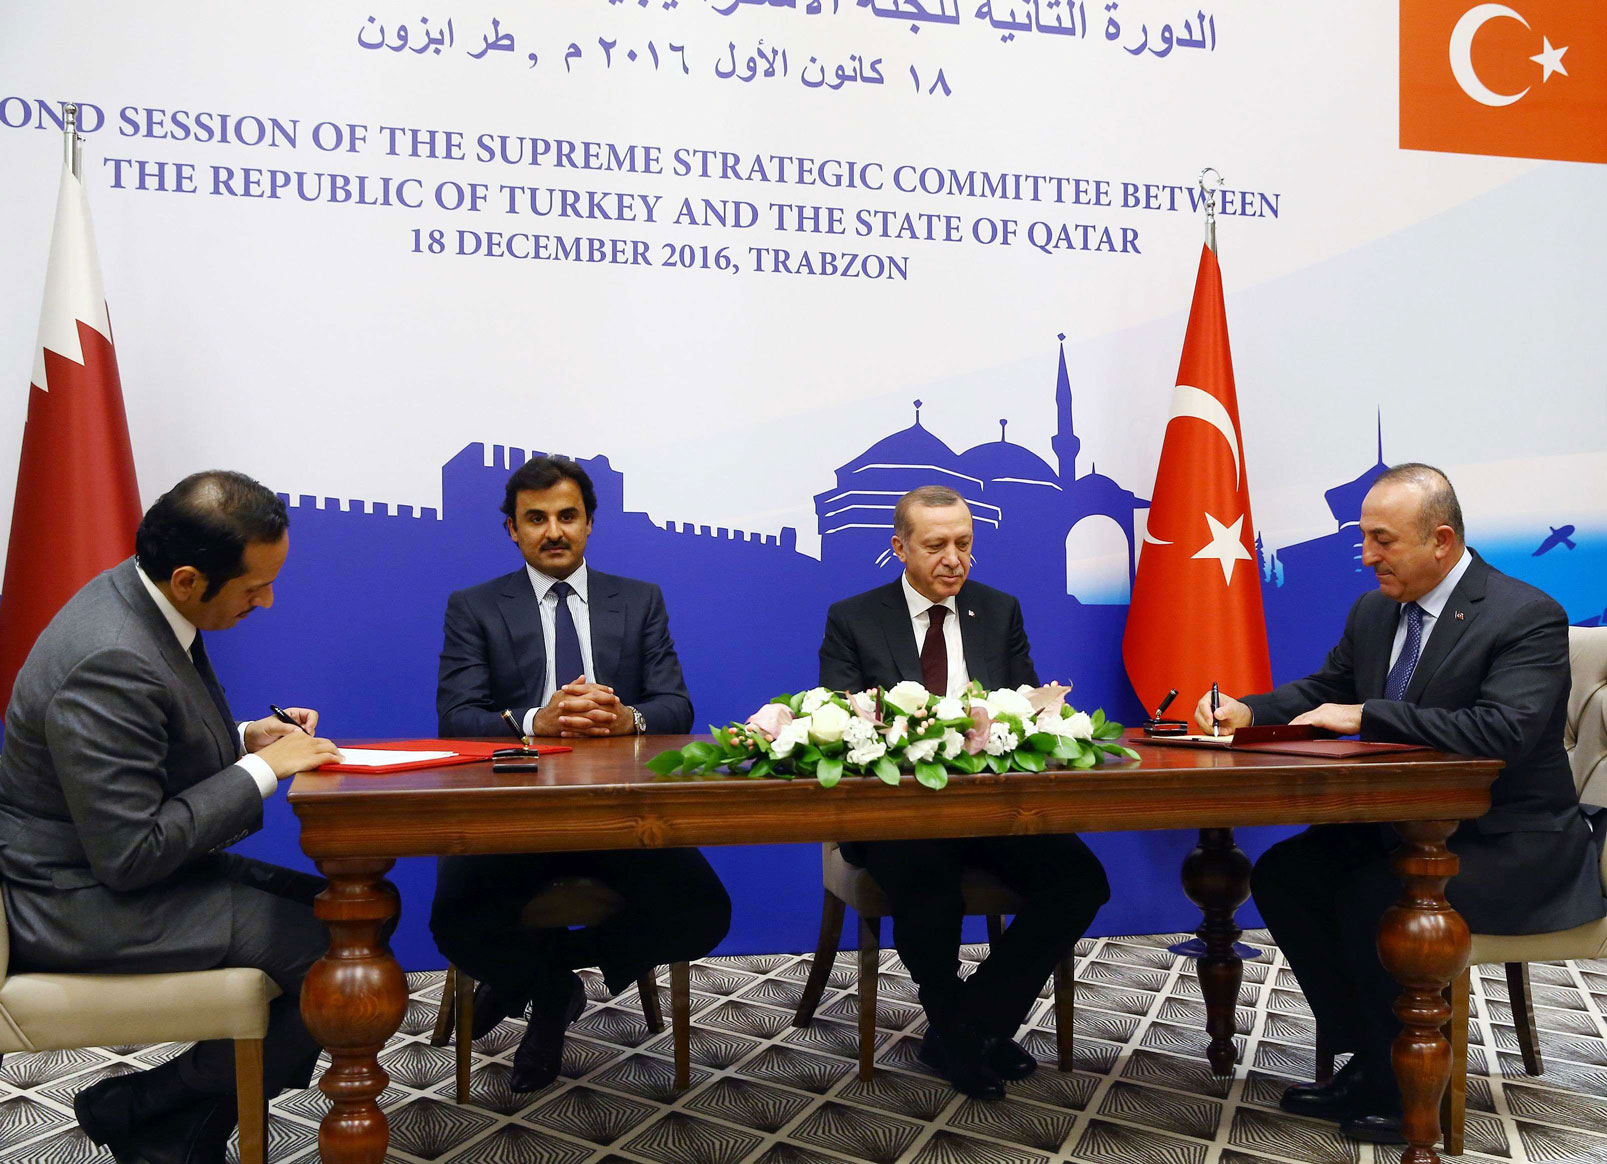 تركيا وقطر يوقعان عقدا يعزز الشراكة الاستراتيجية الشاملة بينهما